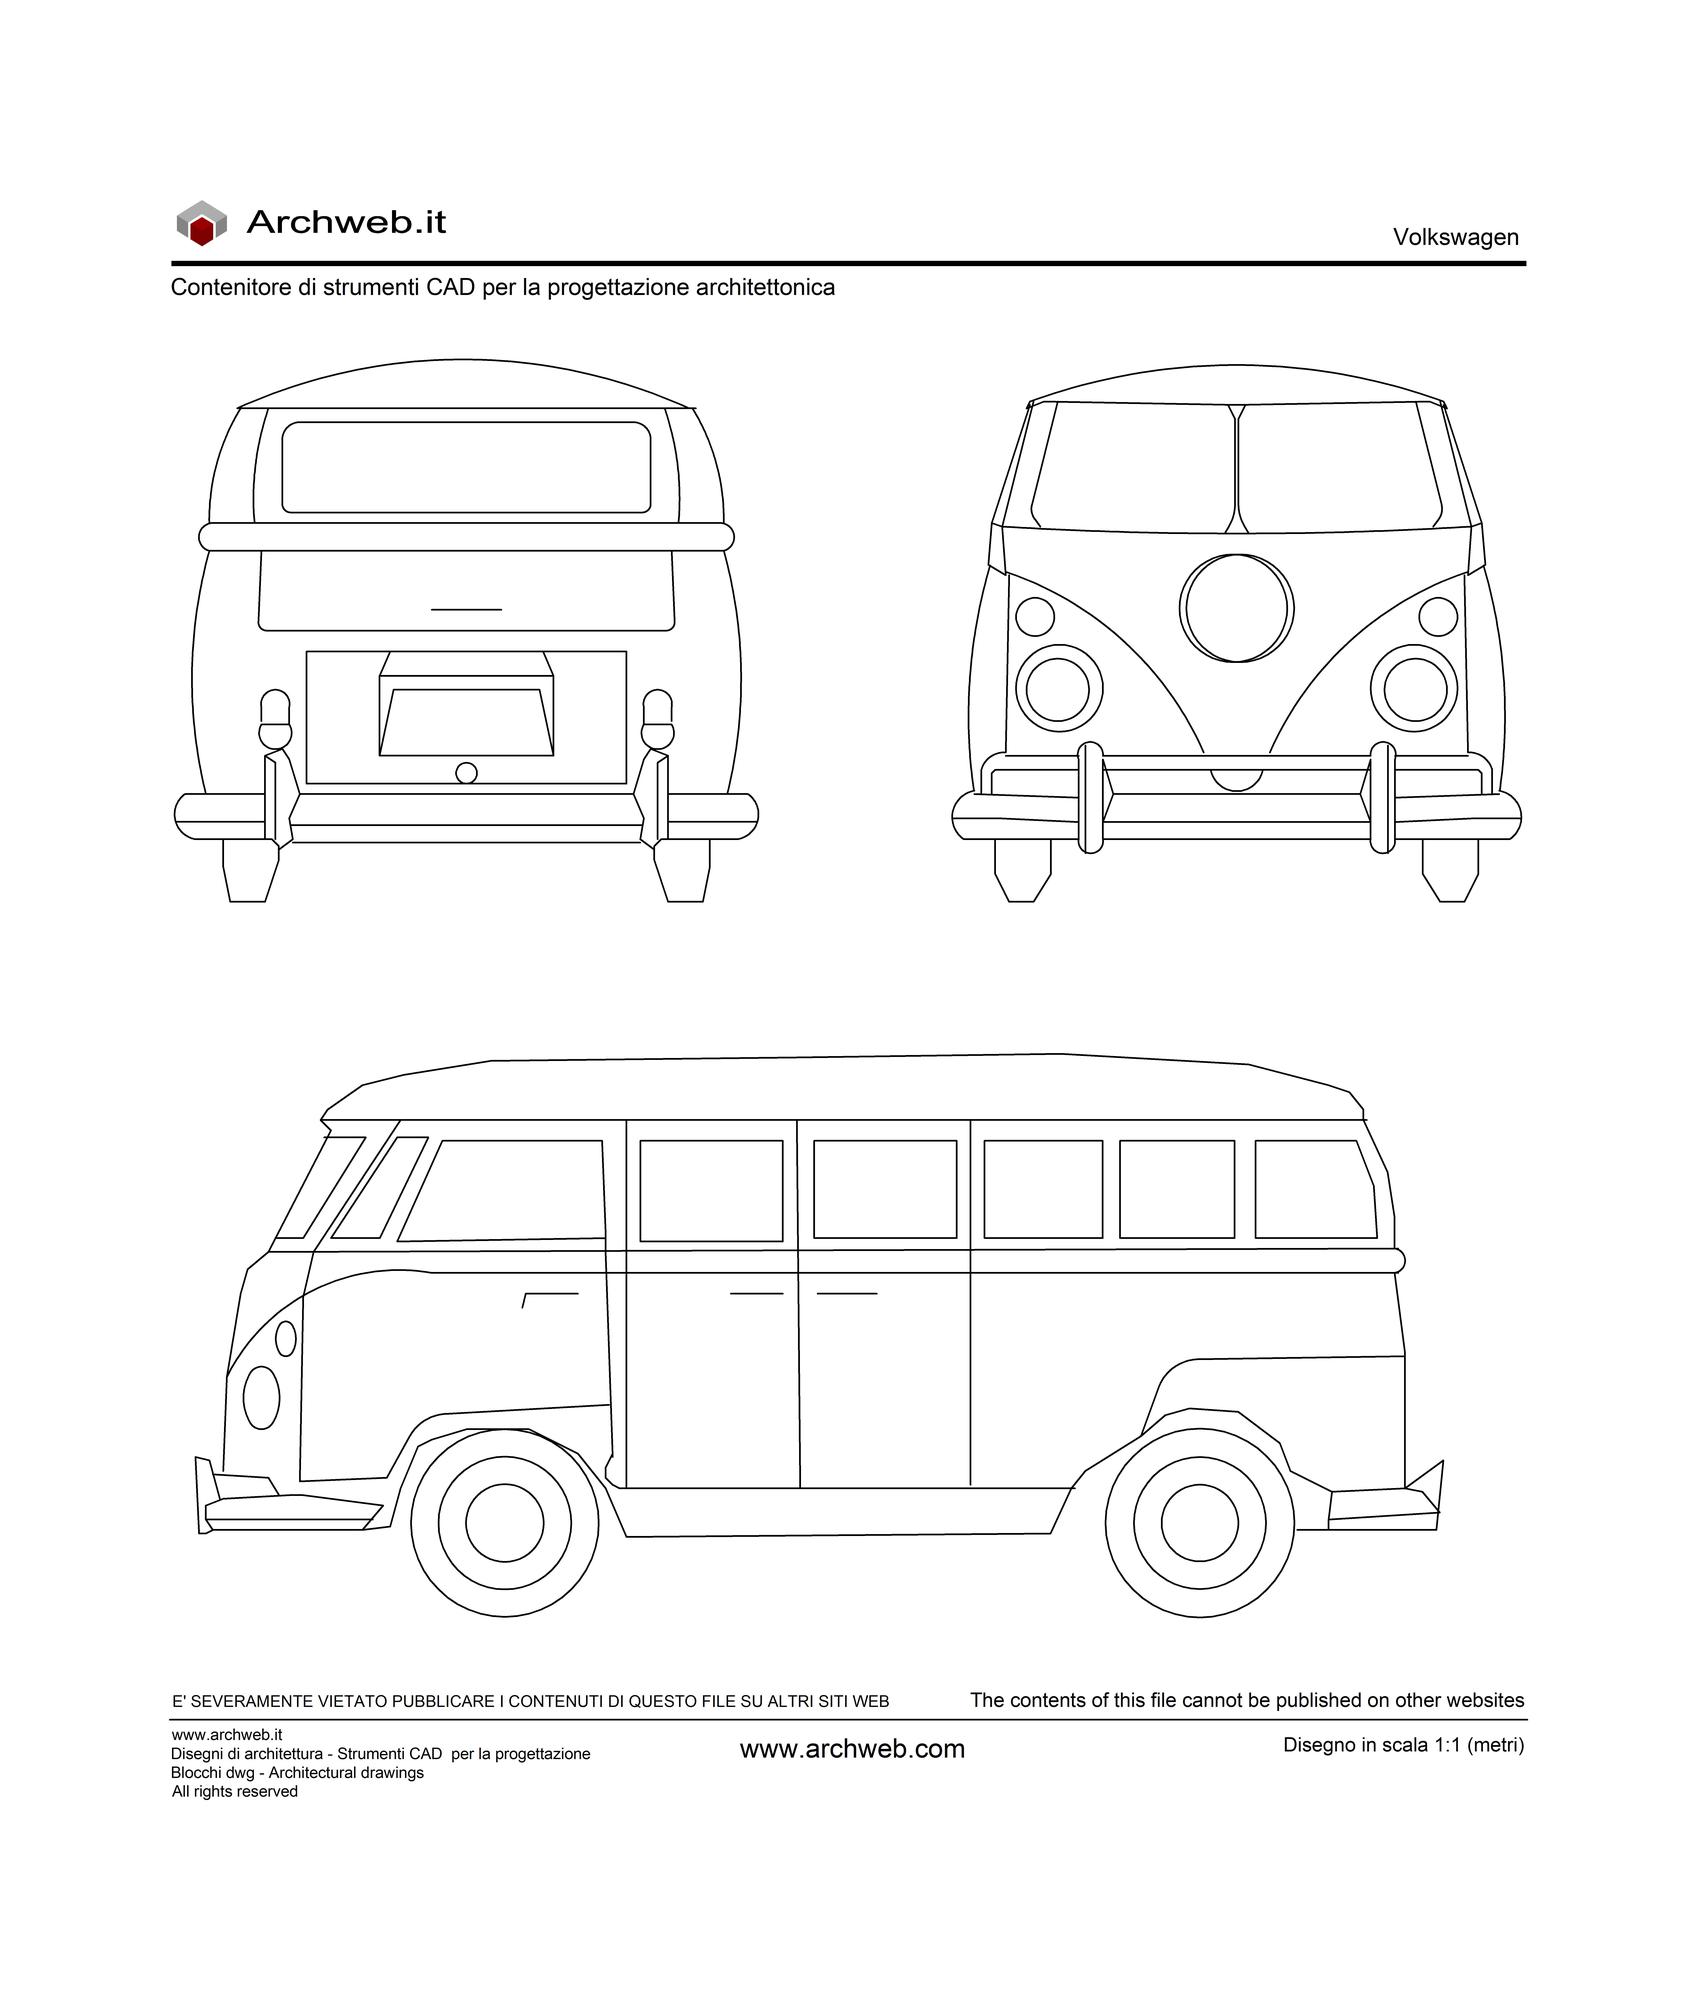 Volkswagen 02 dwg